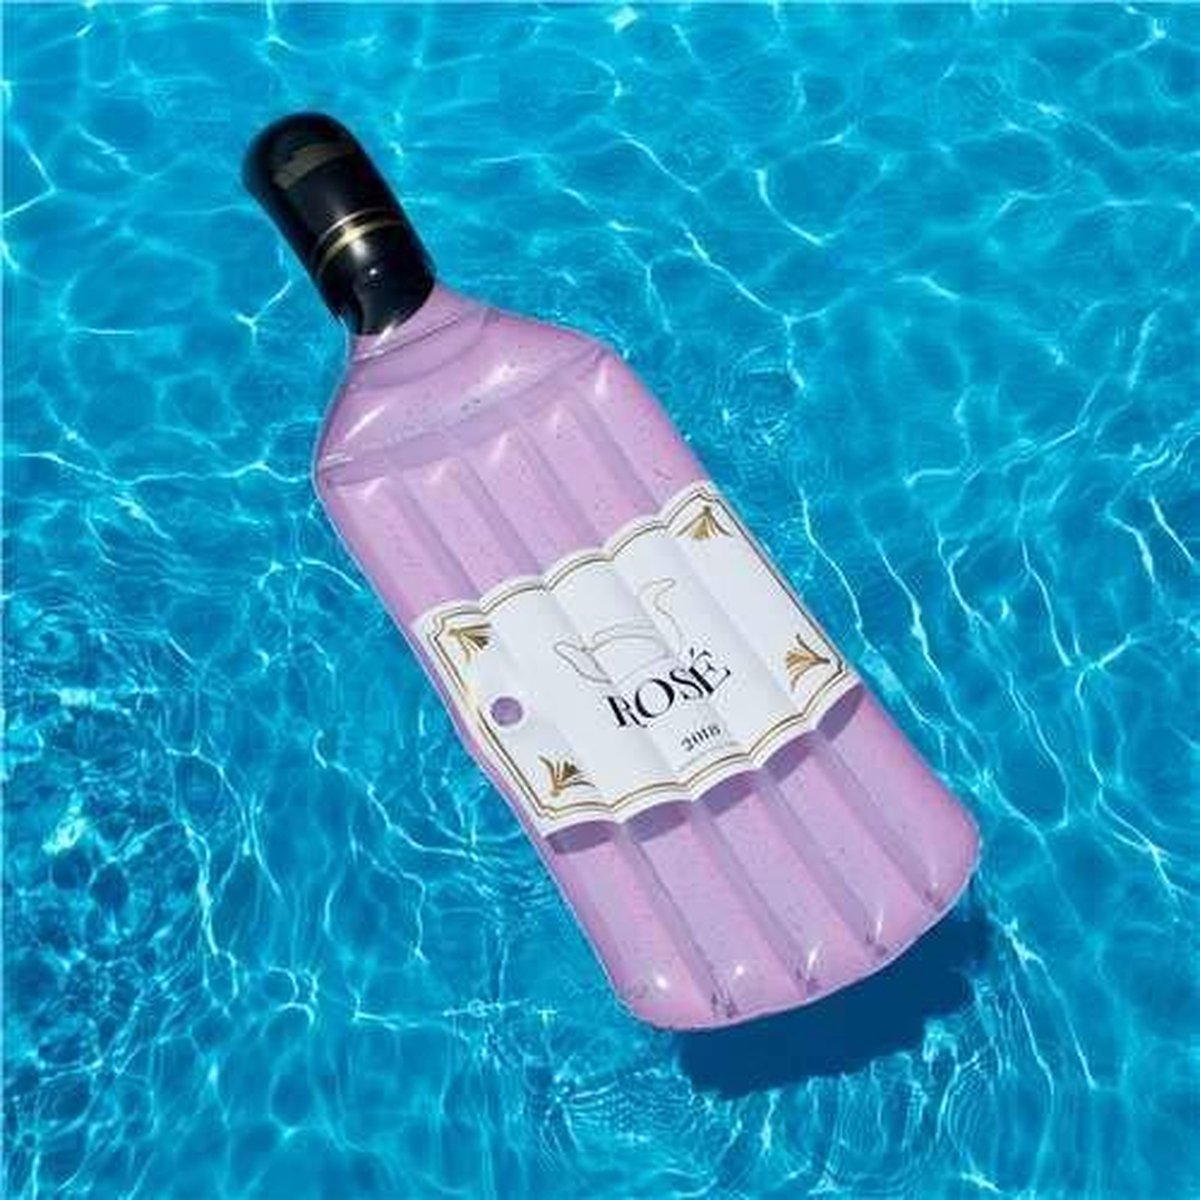 Piscine matelas pneumatique flottant bouteille de vin rosé | bol.com